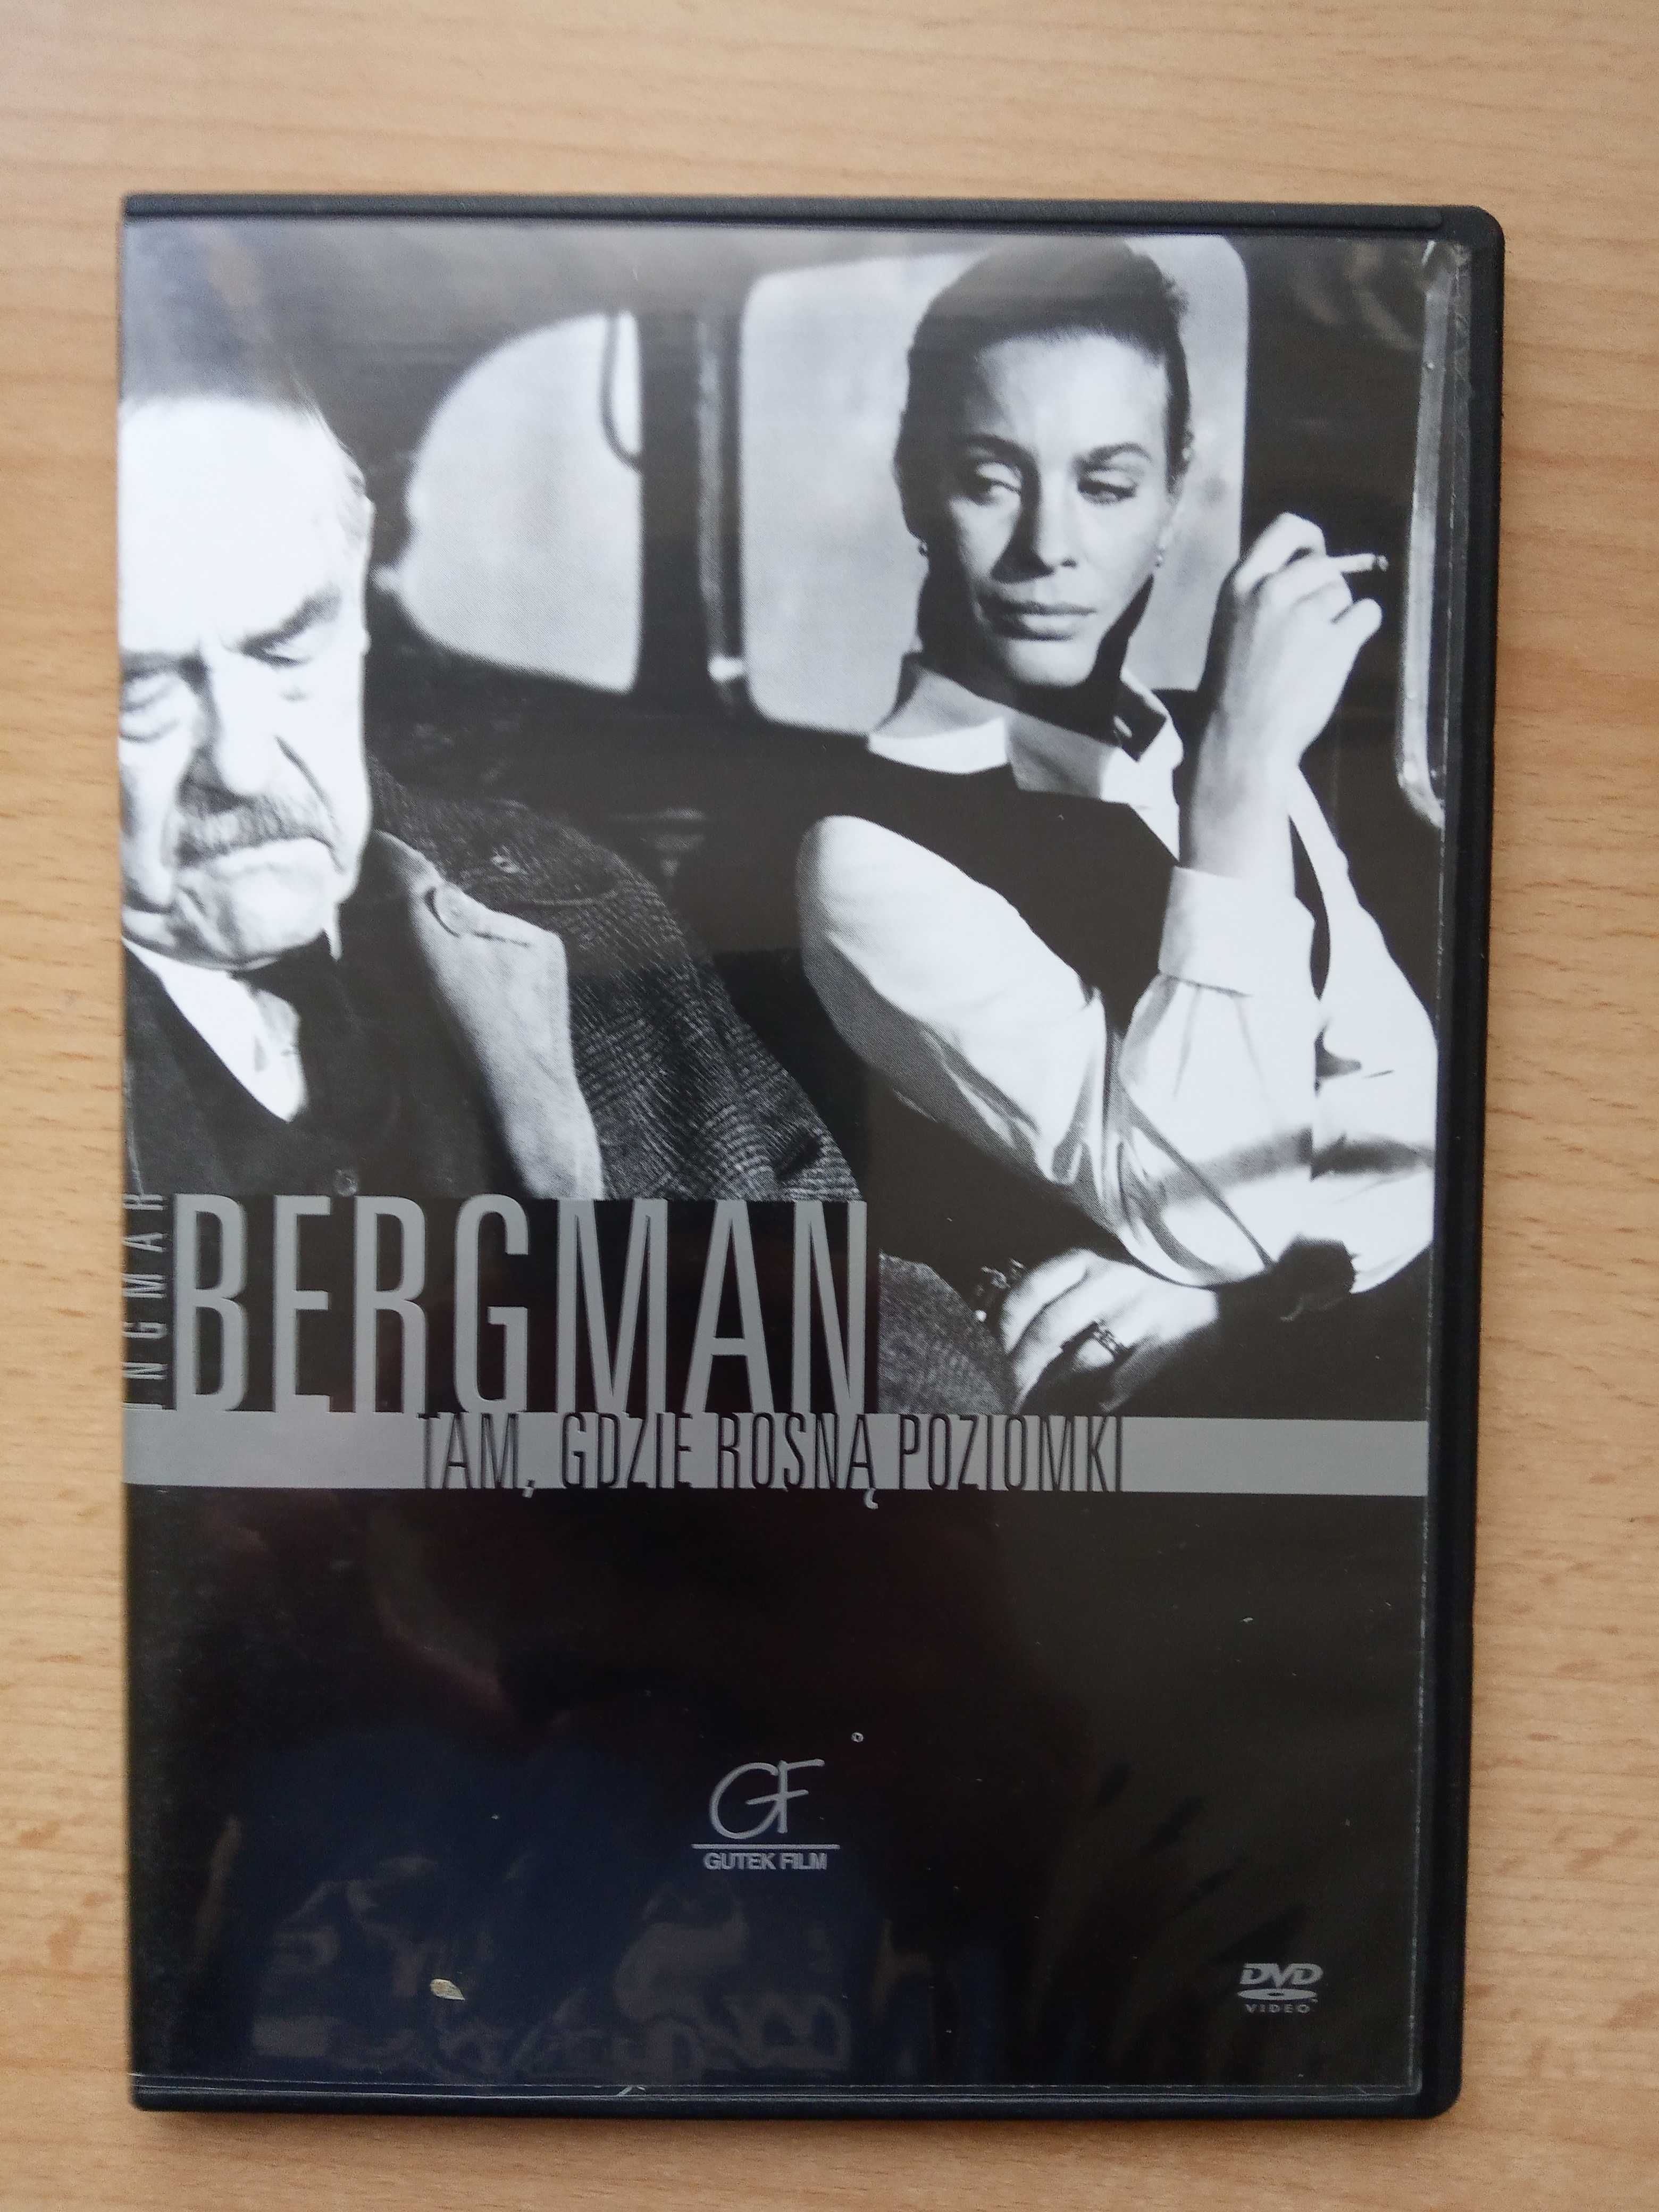 Tam, gdzie rosną poziomki, reż. Ingmar Bergman (DVD)